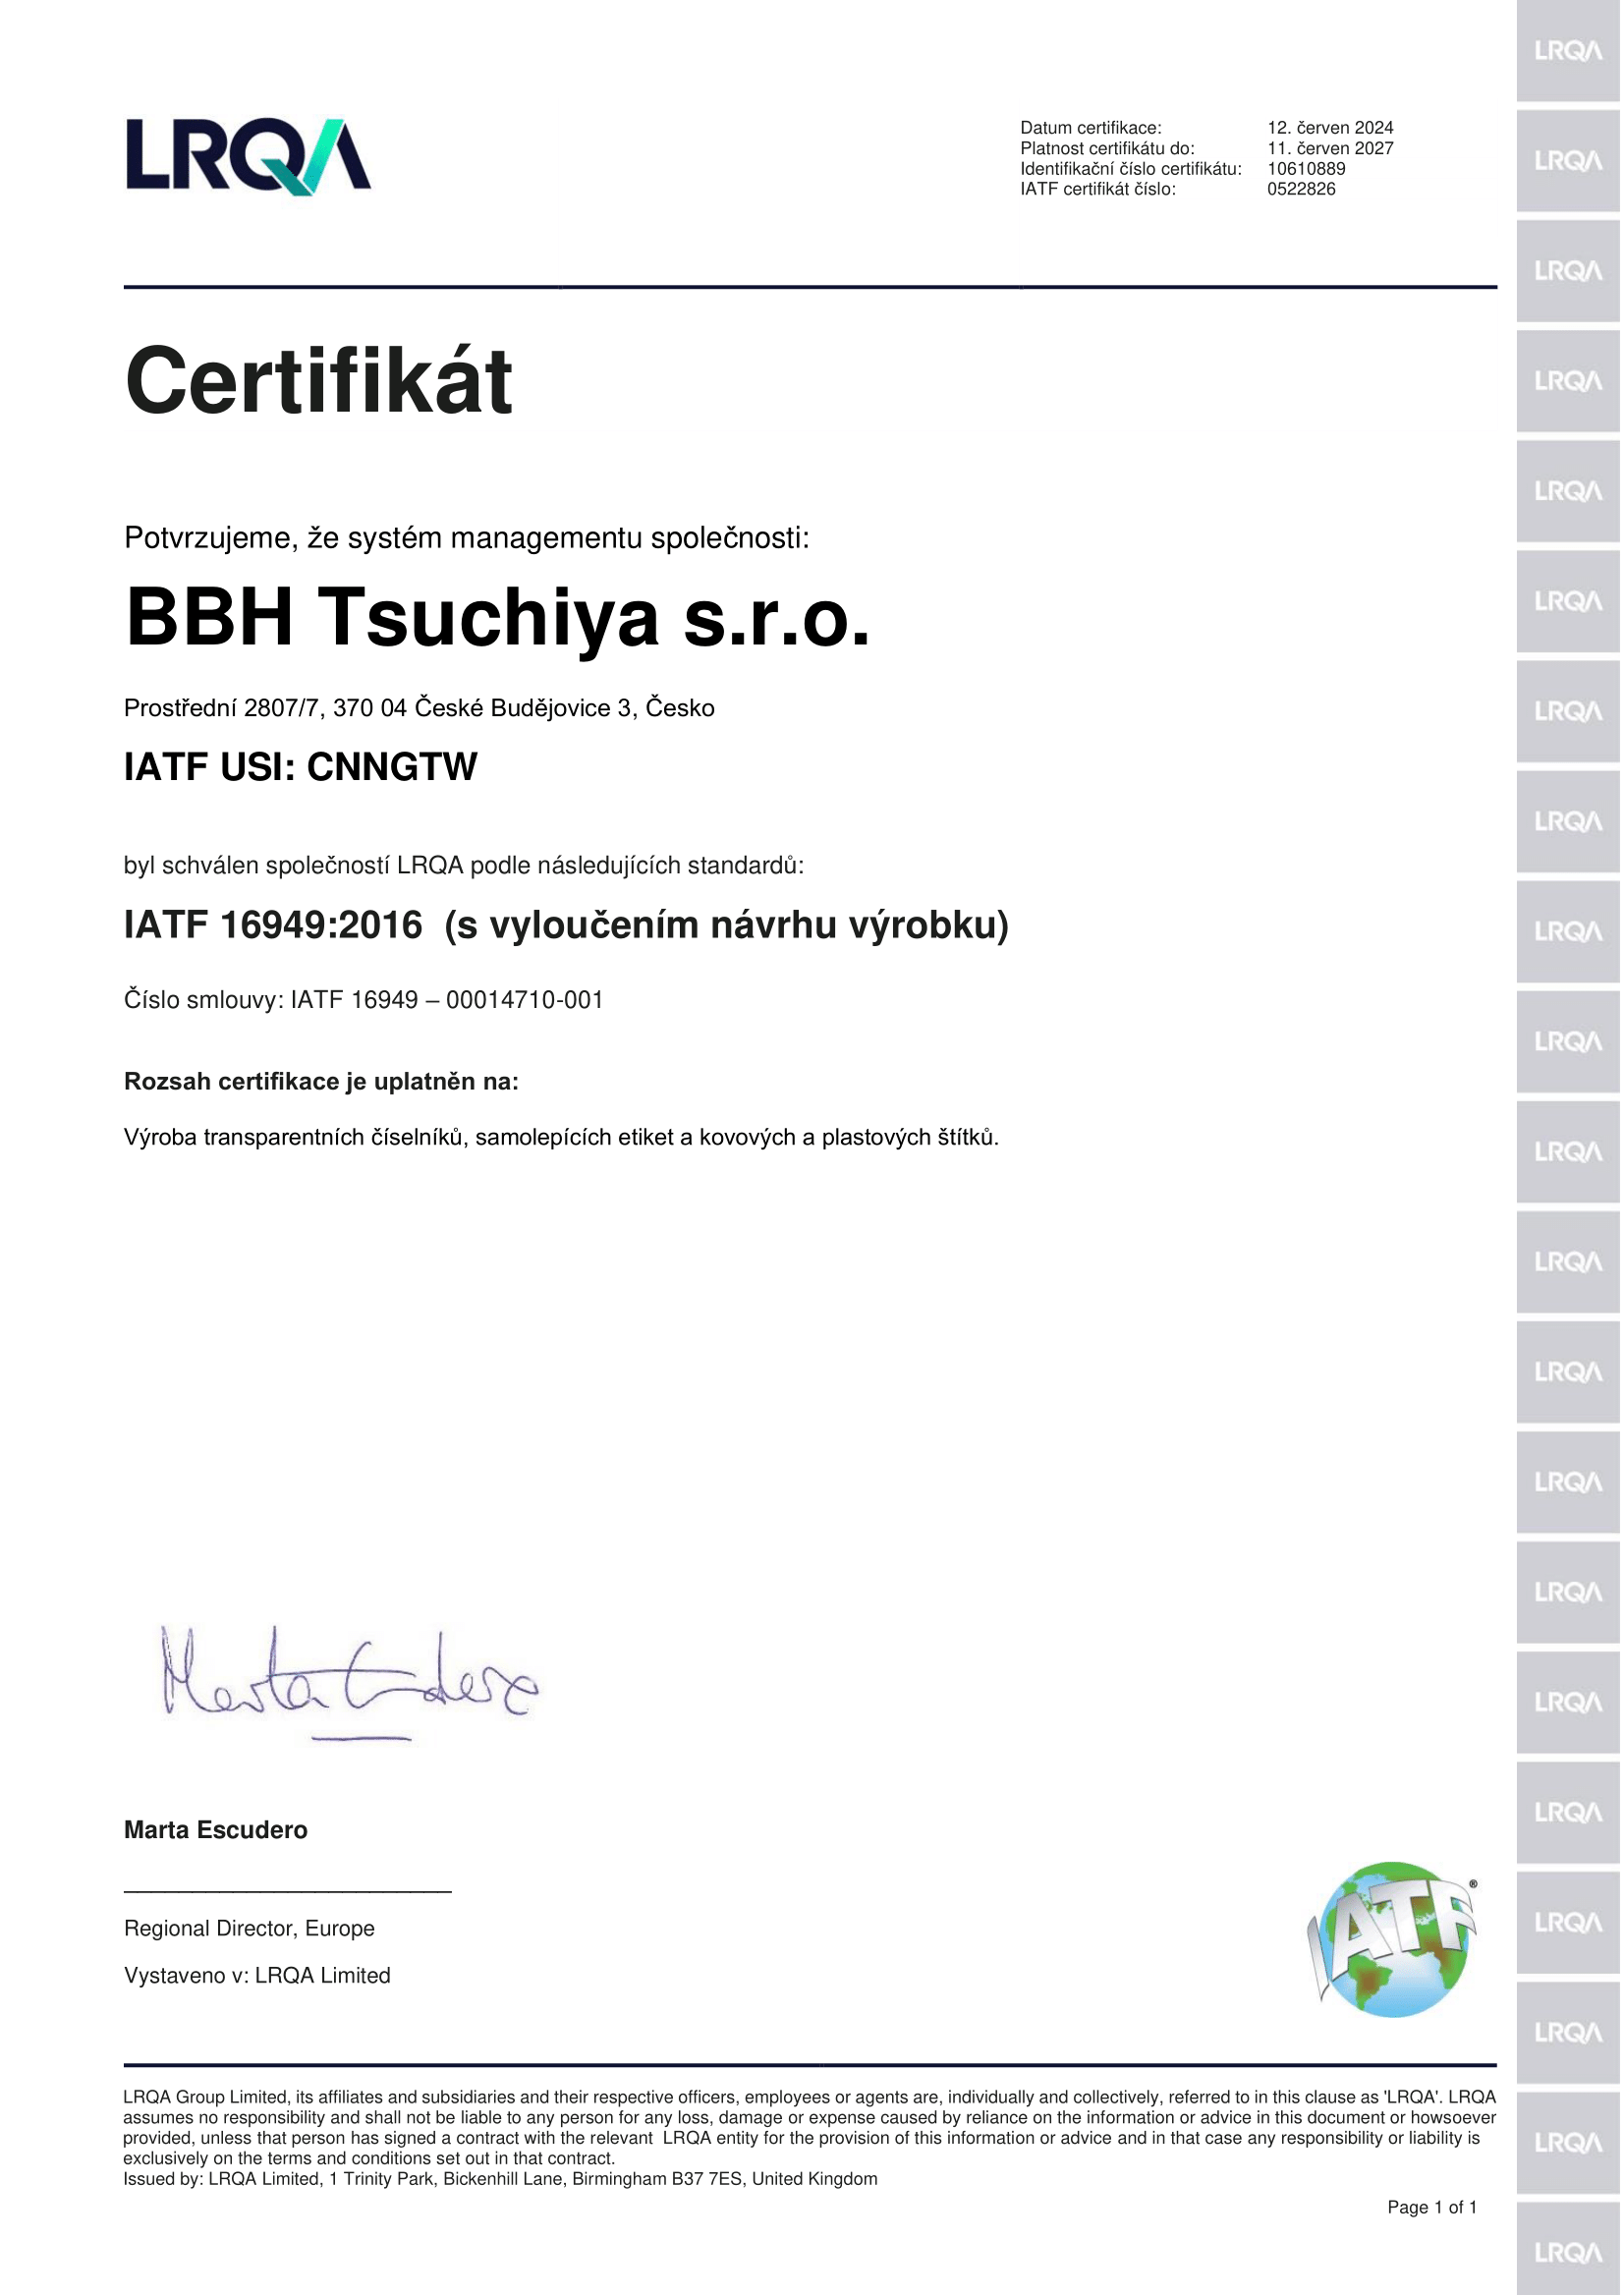 iatf 16949:2016 certifikace